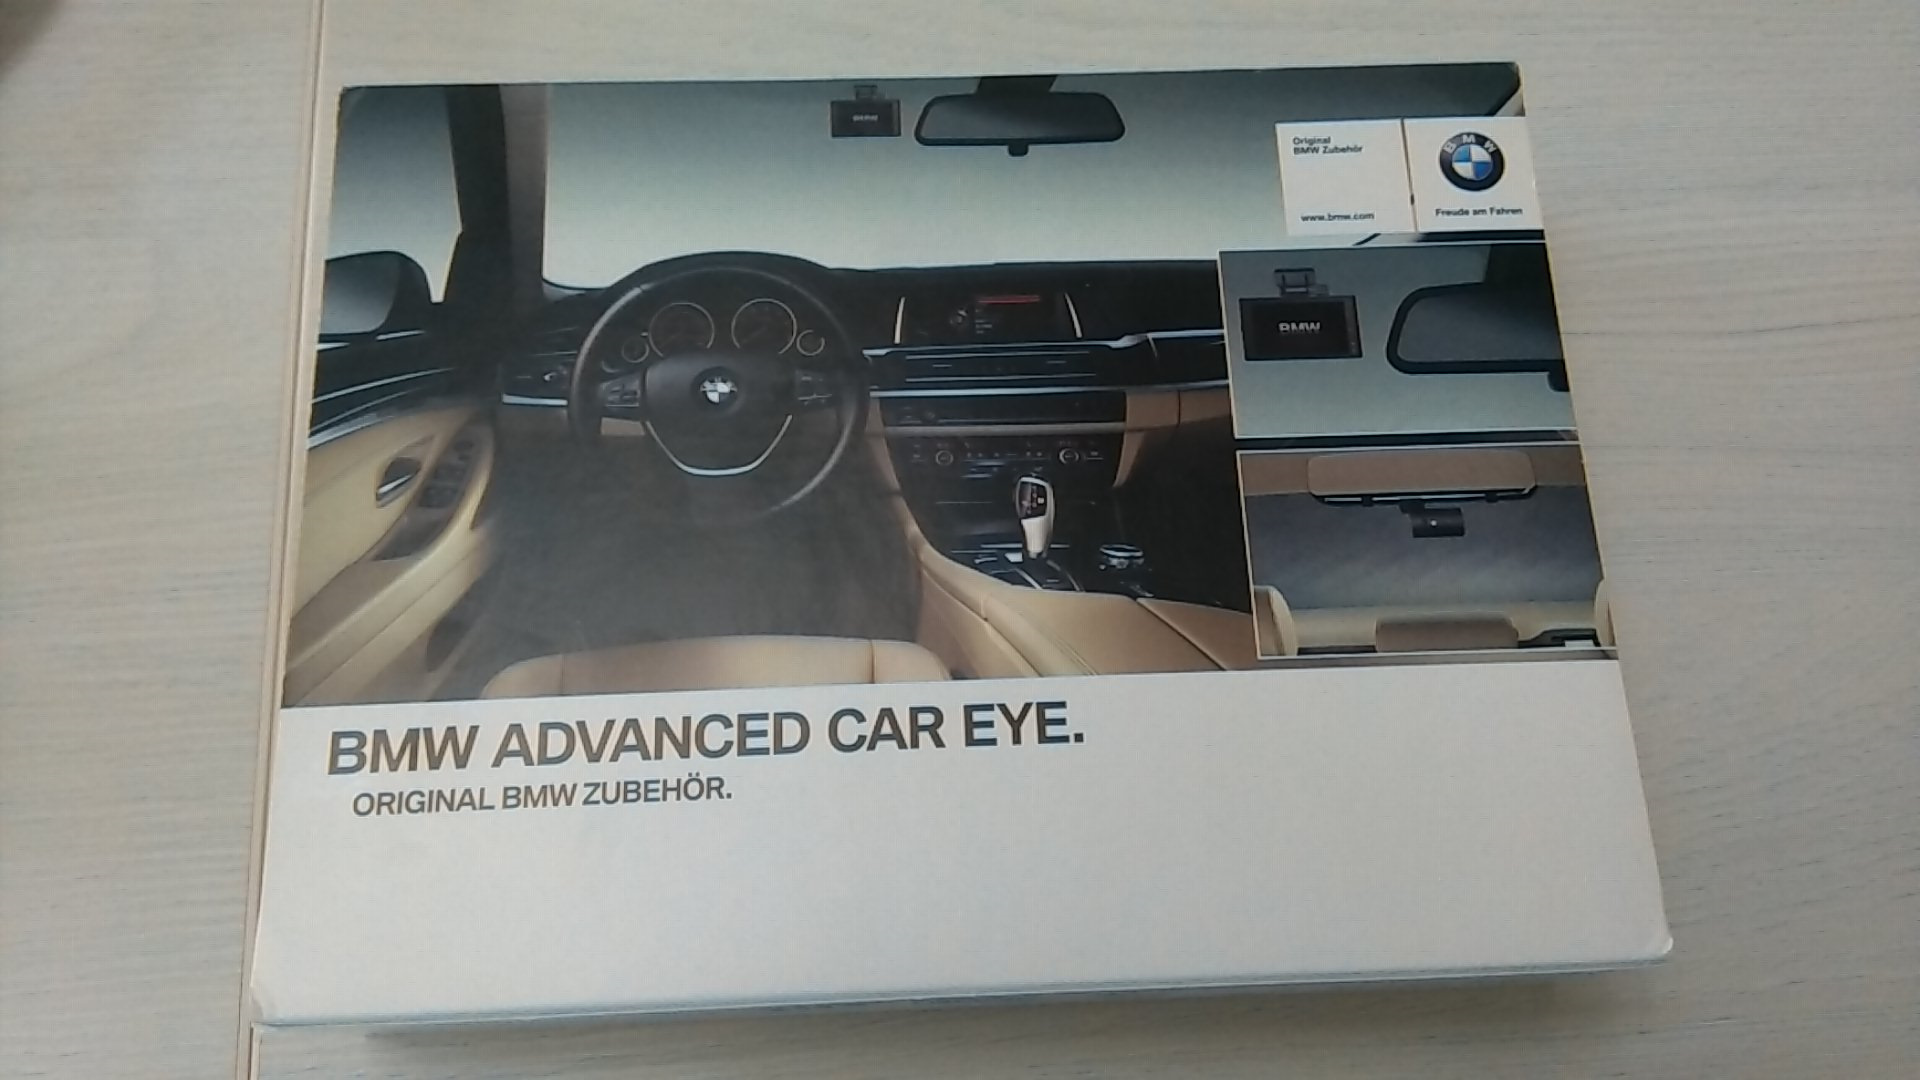 Регистратор bmw. Регистратор BMW Advanced car Eye 66212364600. Регистратор BMW 3.0. БМВ регистратор оригинал g 30. Регистратор BMW Advanced car Eye.